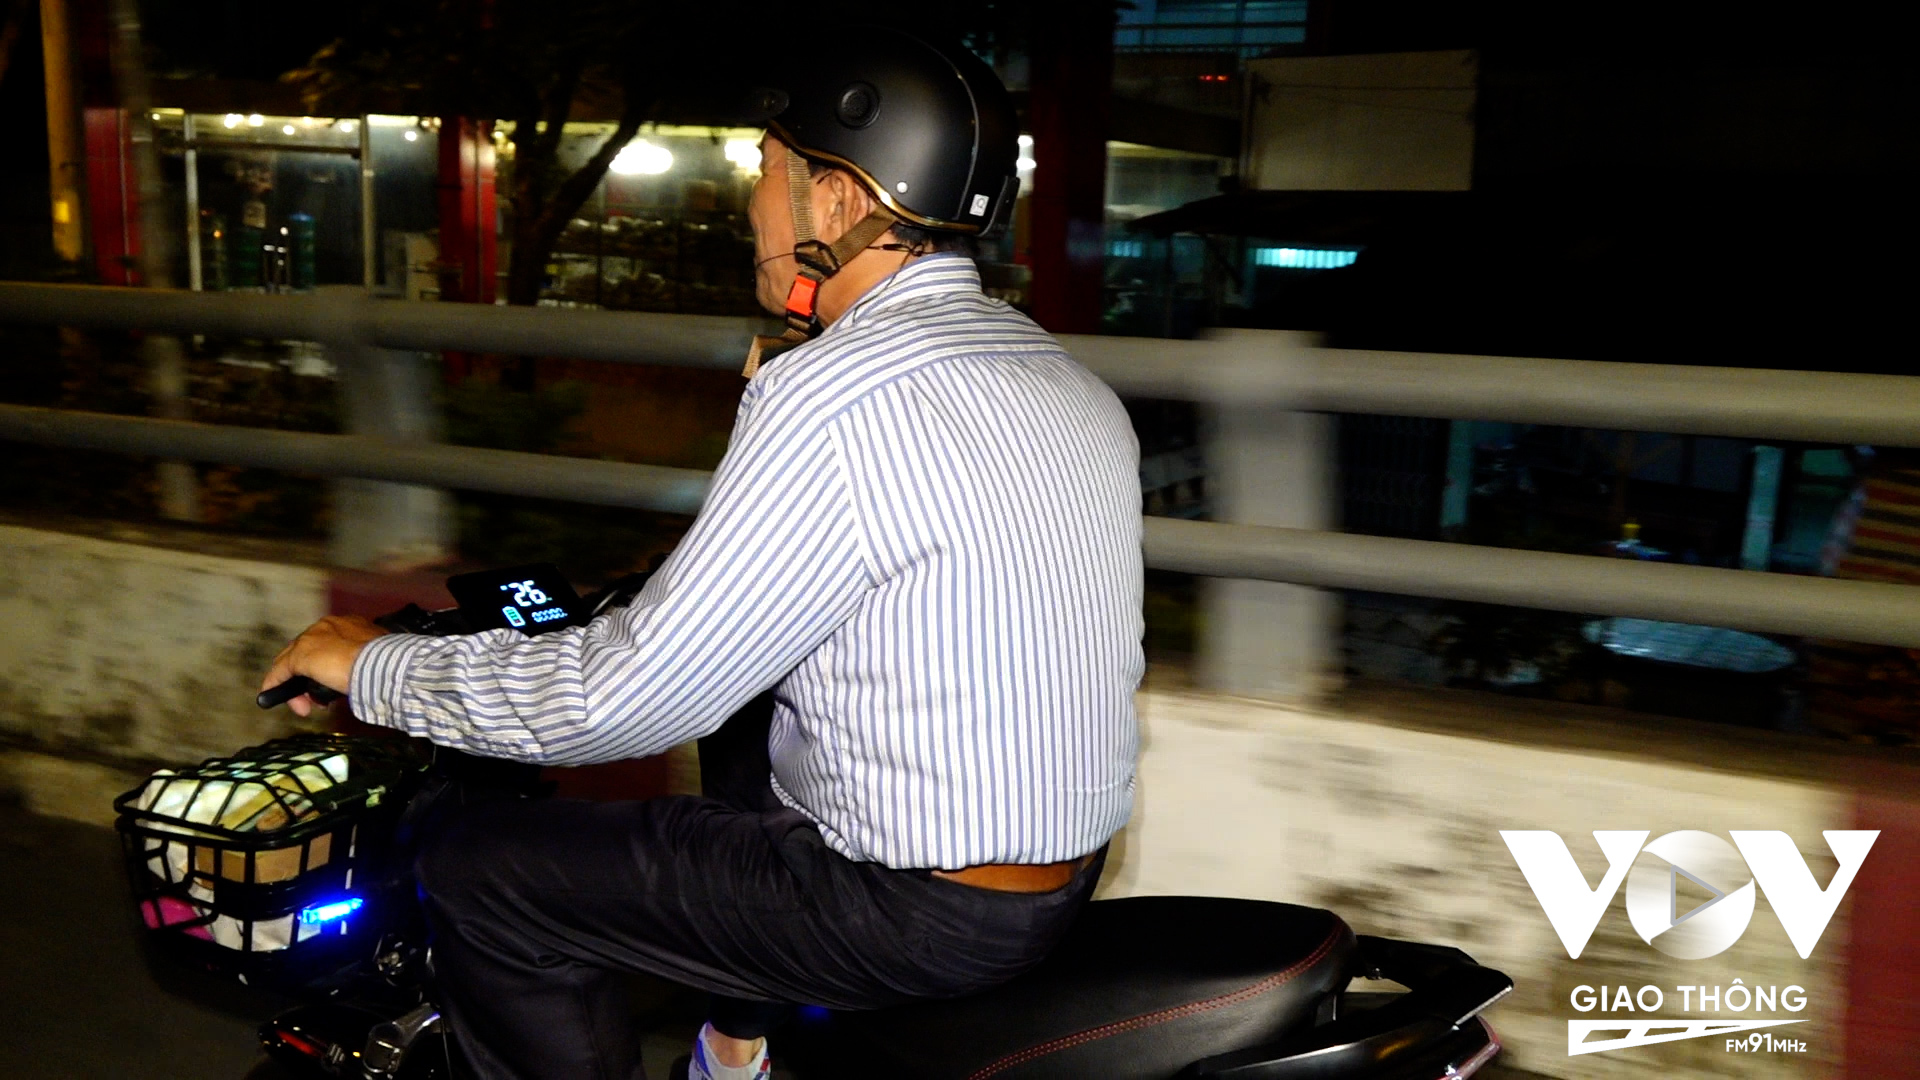 Sau khi di chuyển bằng ô tô về tới UBND xã Hiệp Phước, mọi người sẽ được giao một chiếc xe đạp điện và một chiếc tai nghe để trải nghiệm.